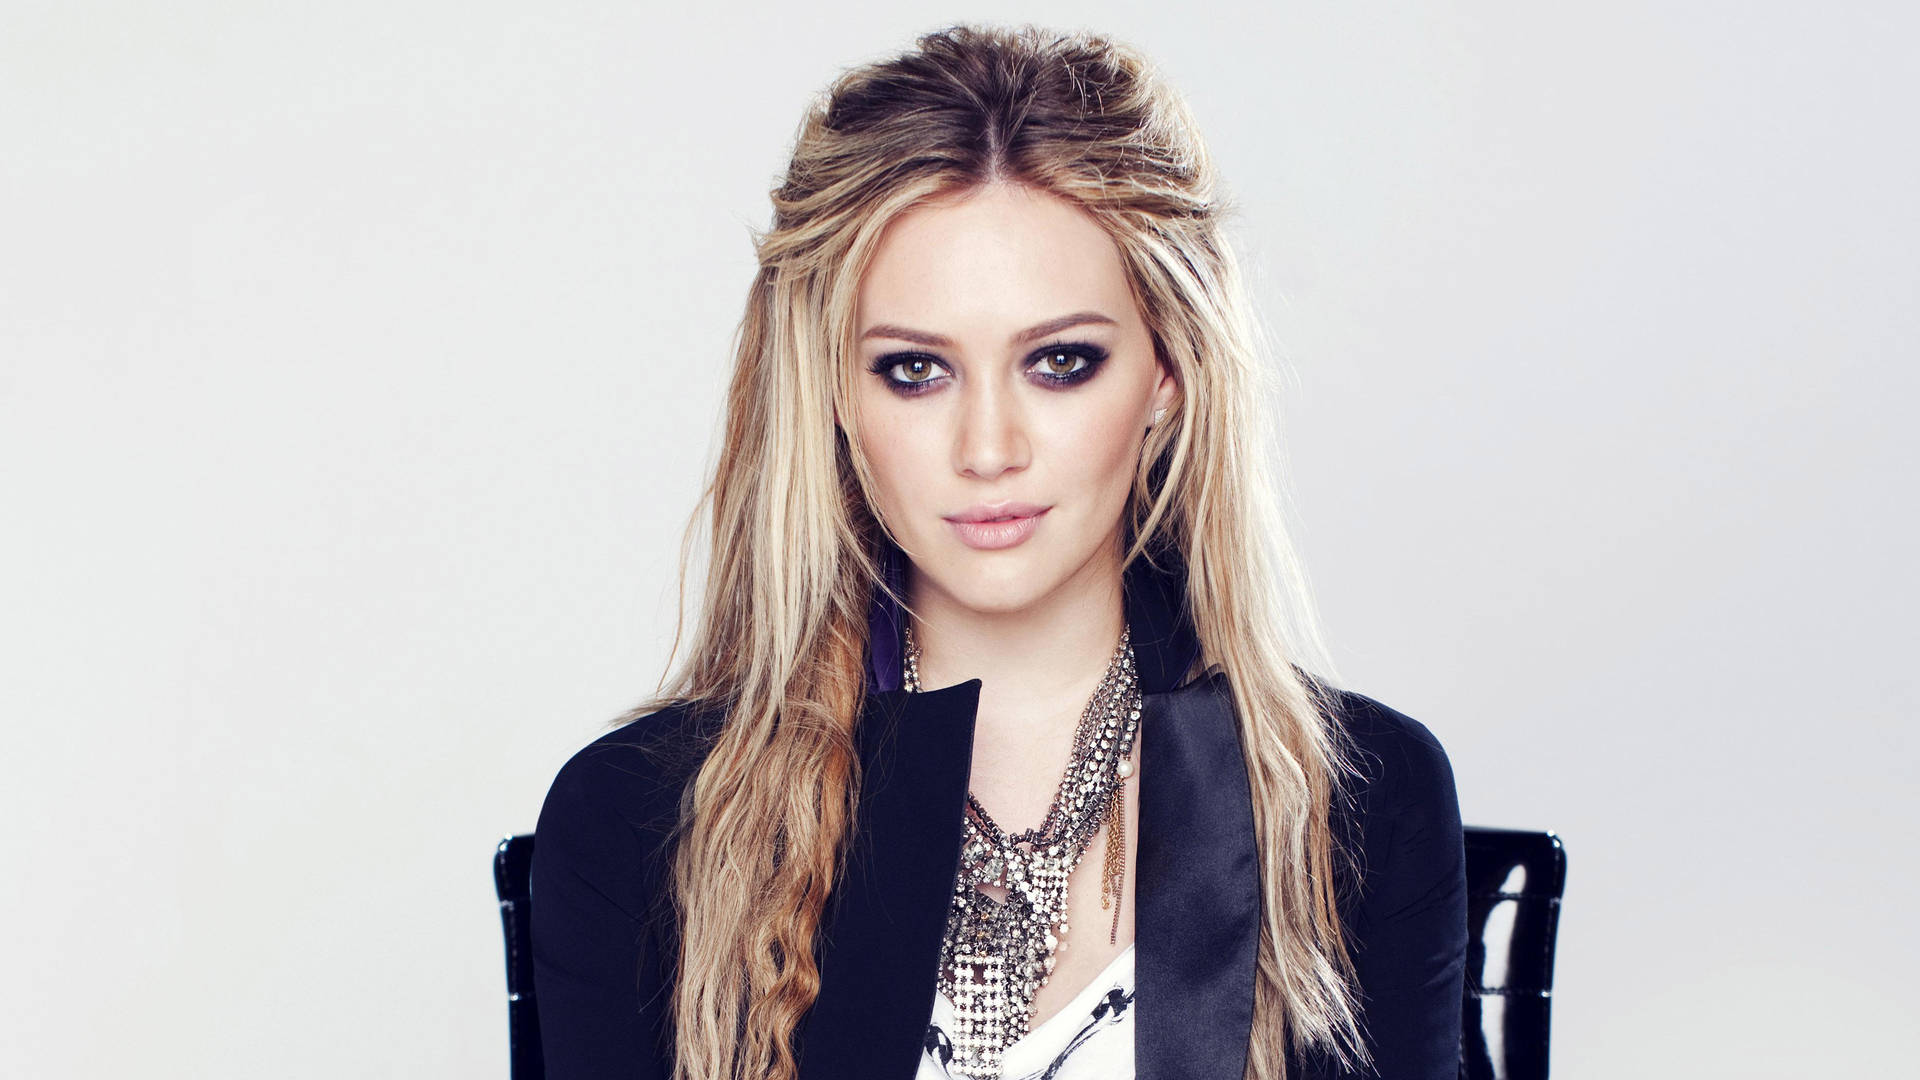 Hilary Duff Wearing A Black Jacket Wallpaper